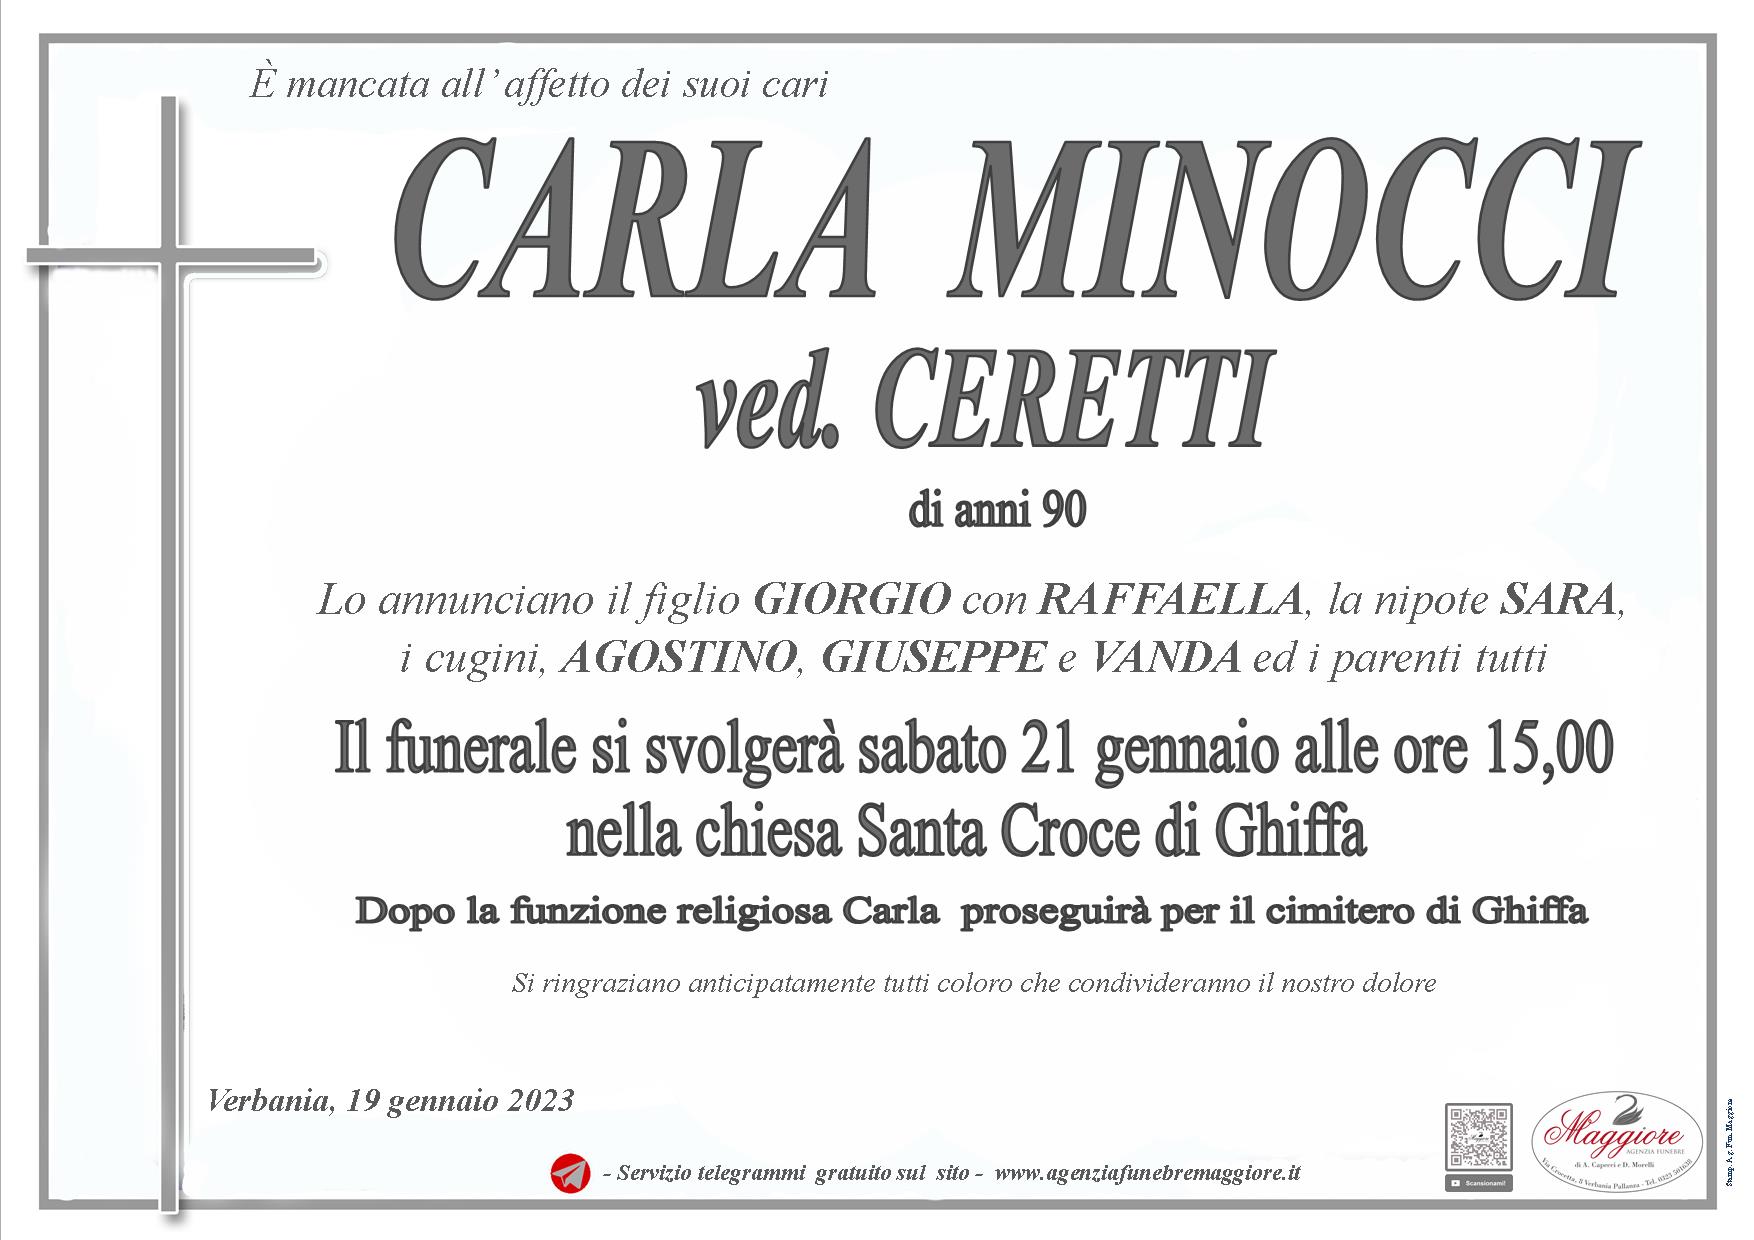 Carla Minocci ved. Ceretti